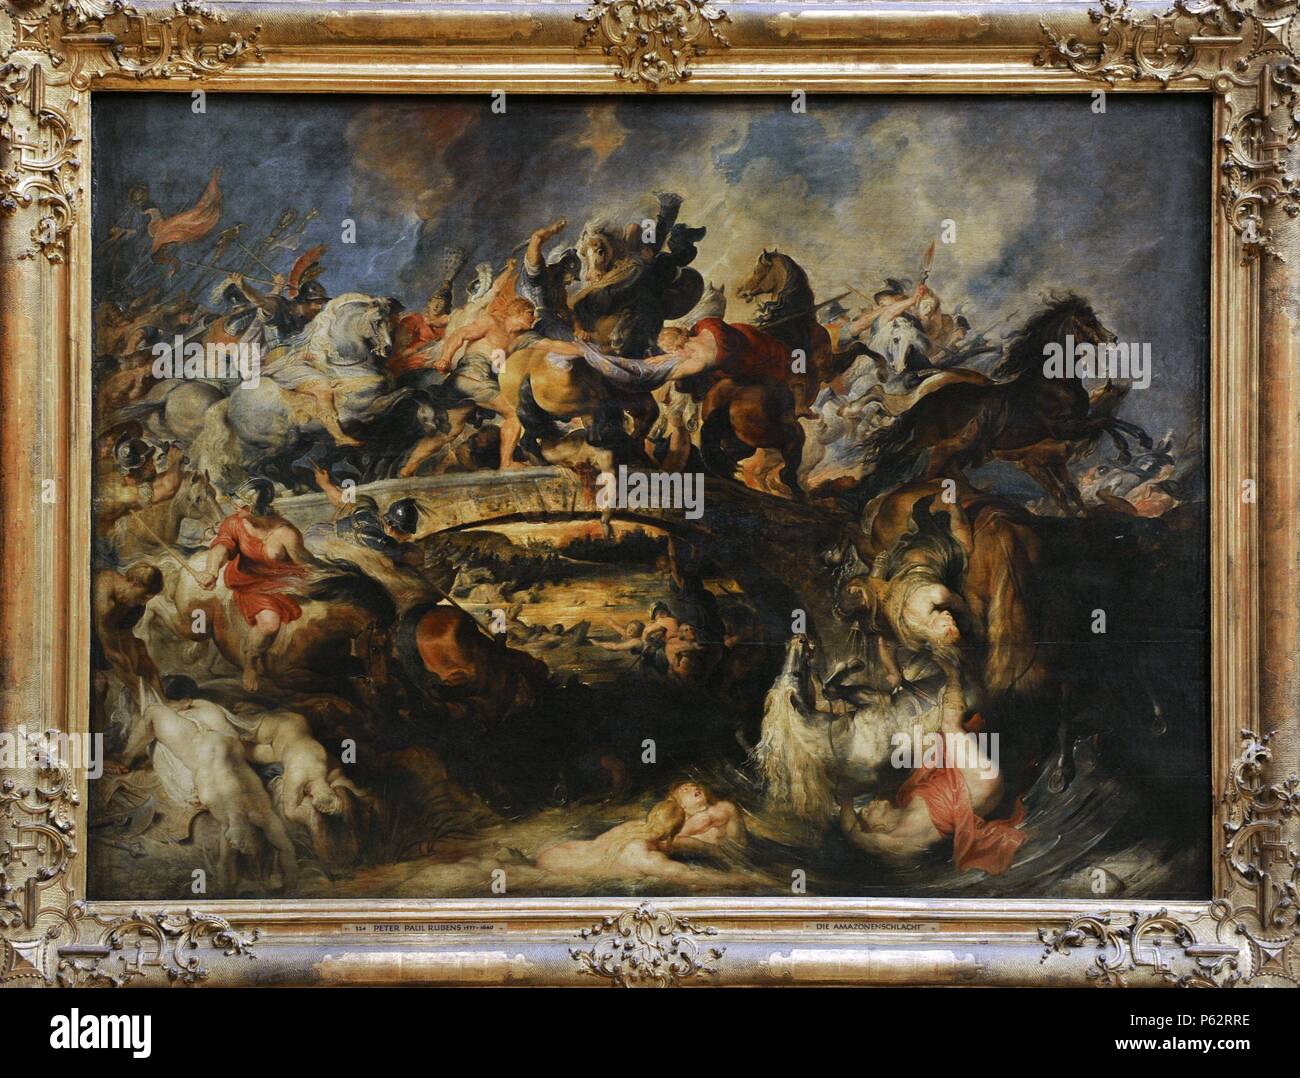 Peter Paul Rubens (1577-1640). War ein Deutscher geborenen flämischen Barock Maler. Kampf der Amazonen, 1618. Öl auf Leinwand. Alte Pinakothek. München. Deutschland. Stockfoto